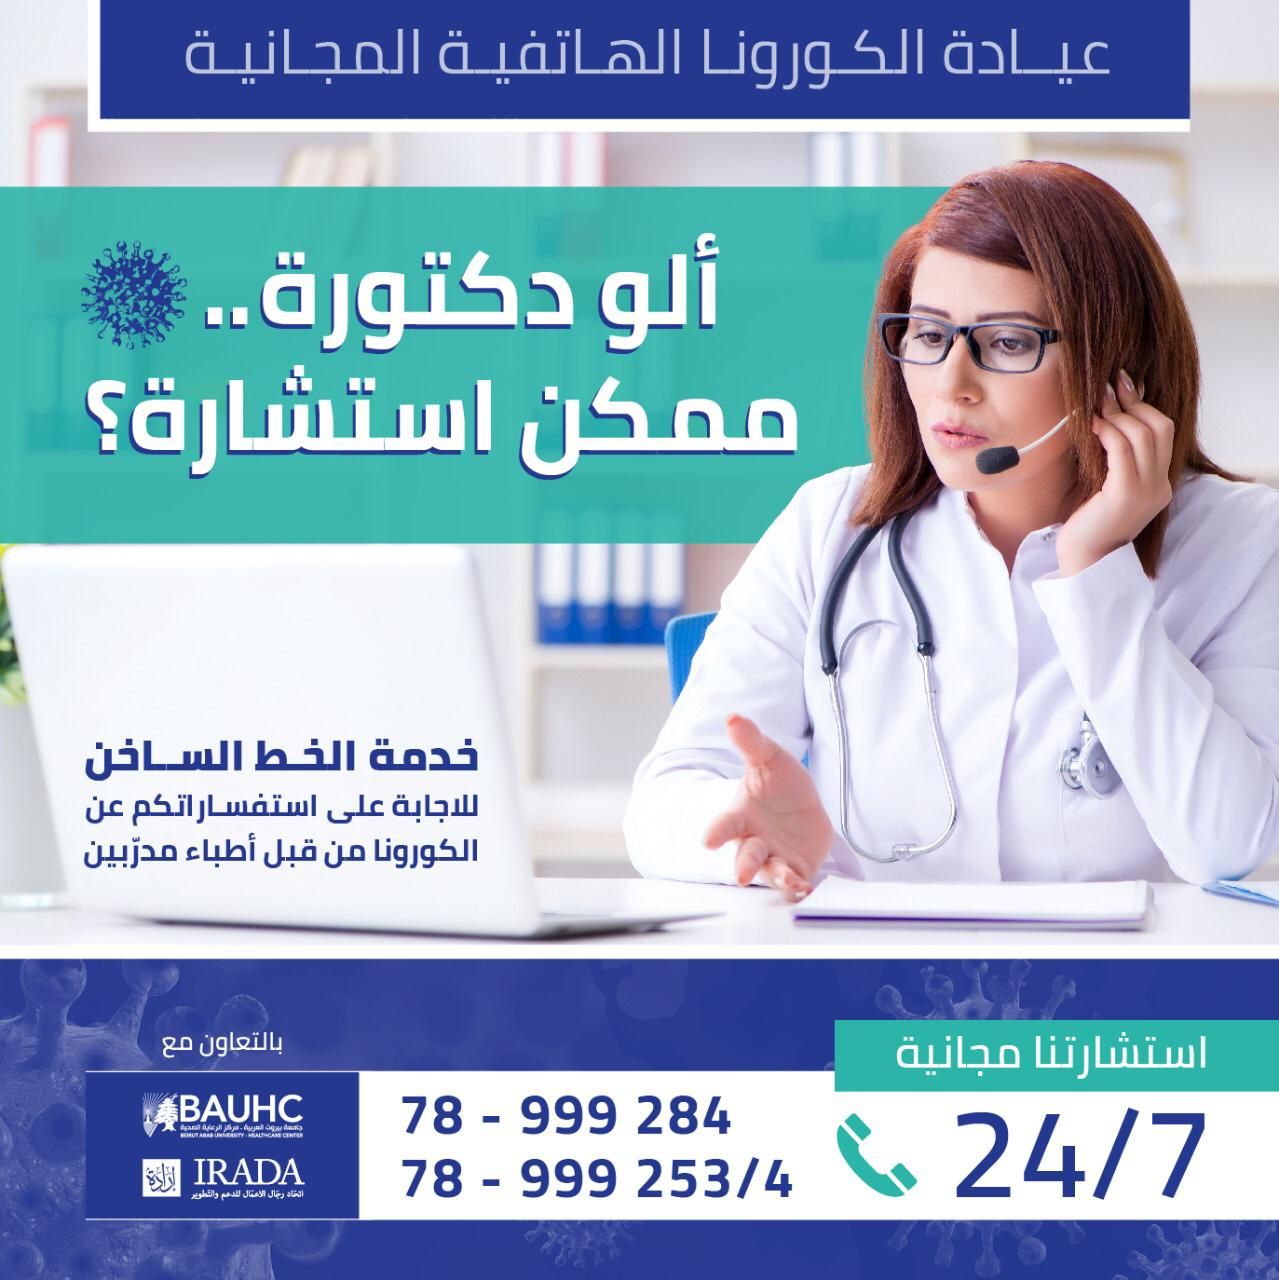 أطباء لبنان يقدّموا استشارات هاتفية بشكل مجاني  حول كورونا